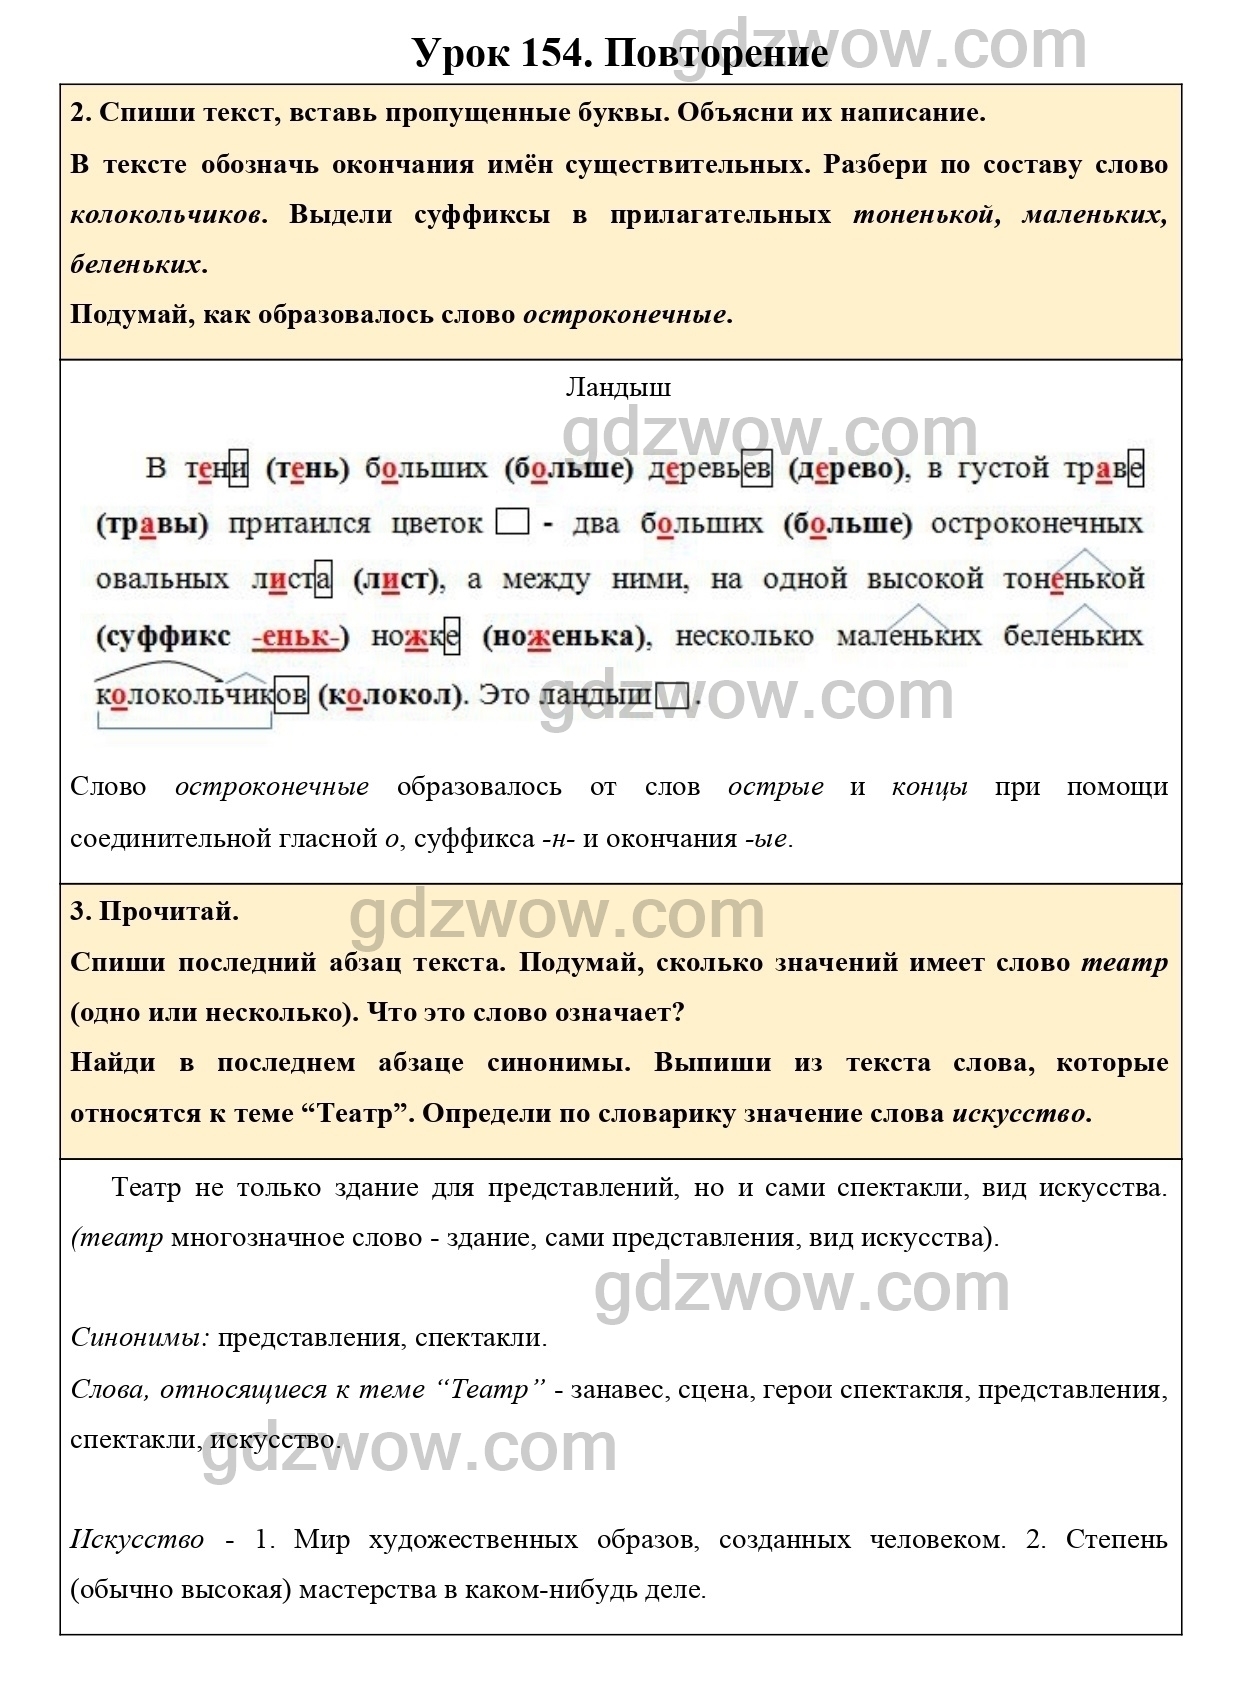 Страница 148-149 учебника по русскому за второй класс. Спиши второй абзац текста обозначь окончания